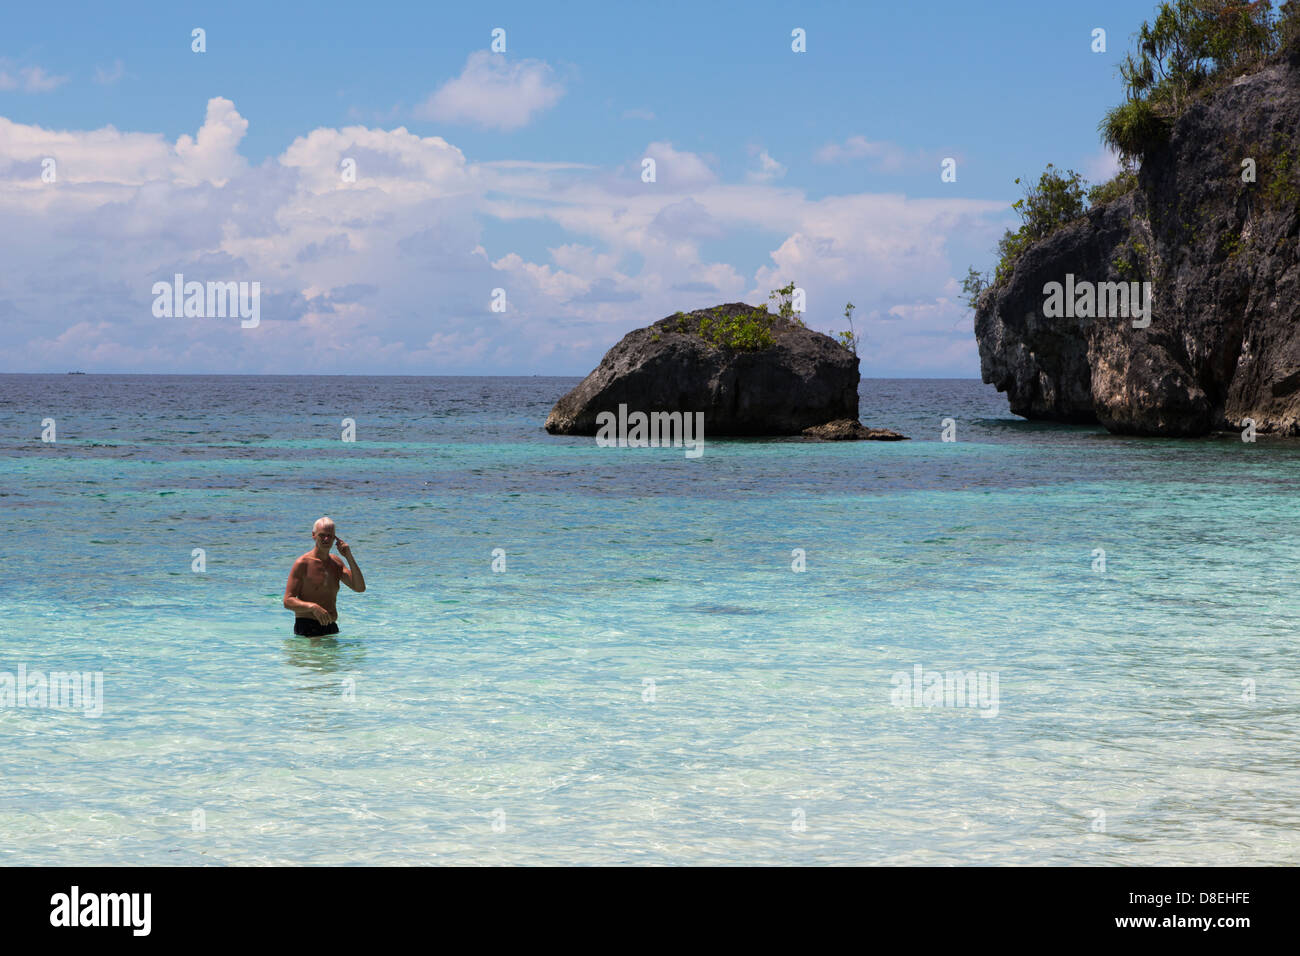 Uomo caucasico godendo immacolate acque nel remoto arcipelago Togian nell isola di Sulawesi, Indonesia Foto Stock